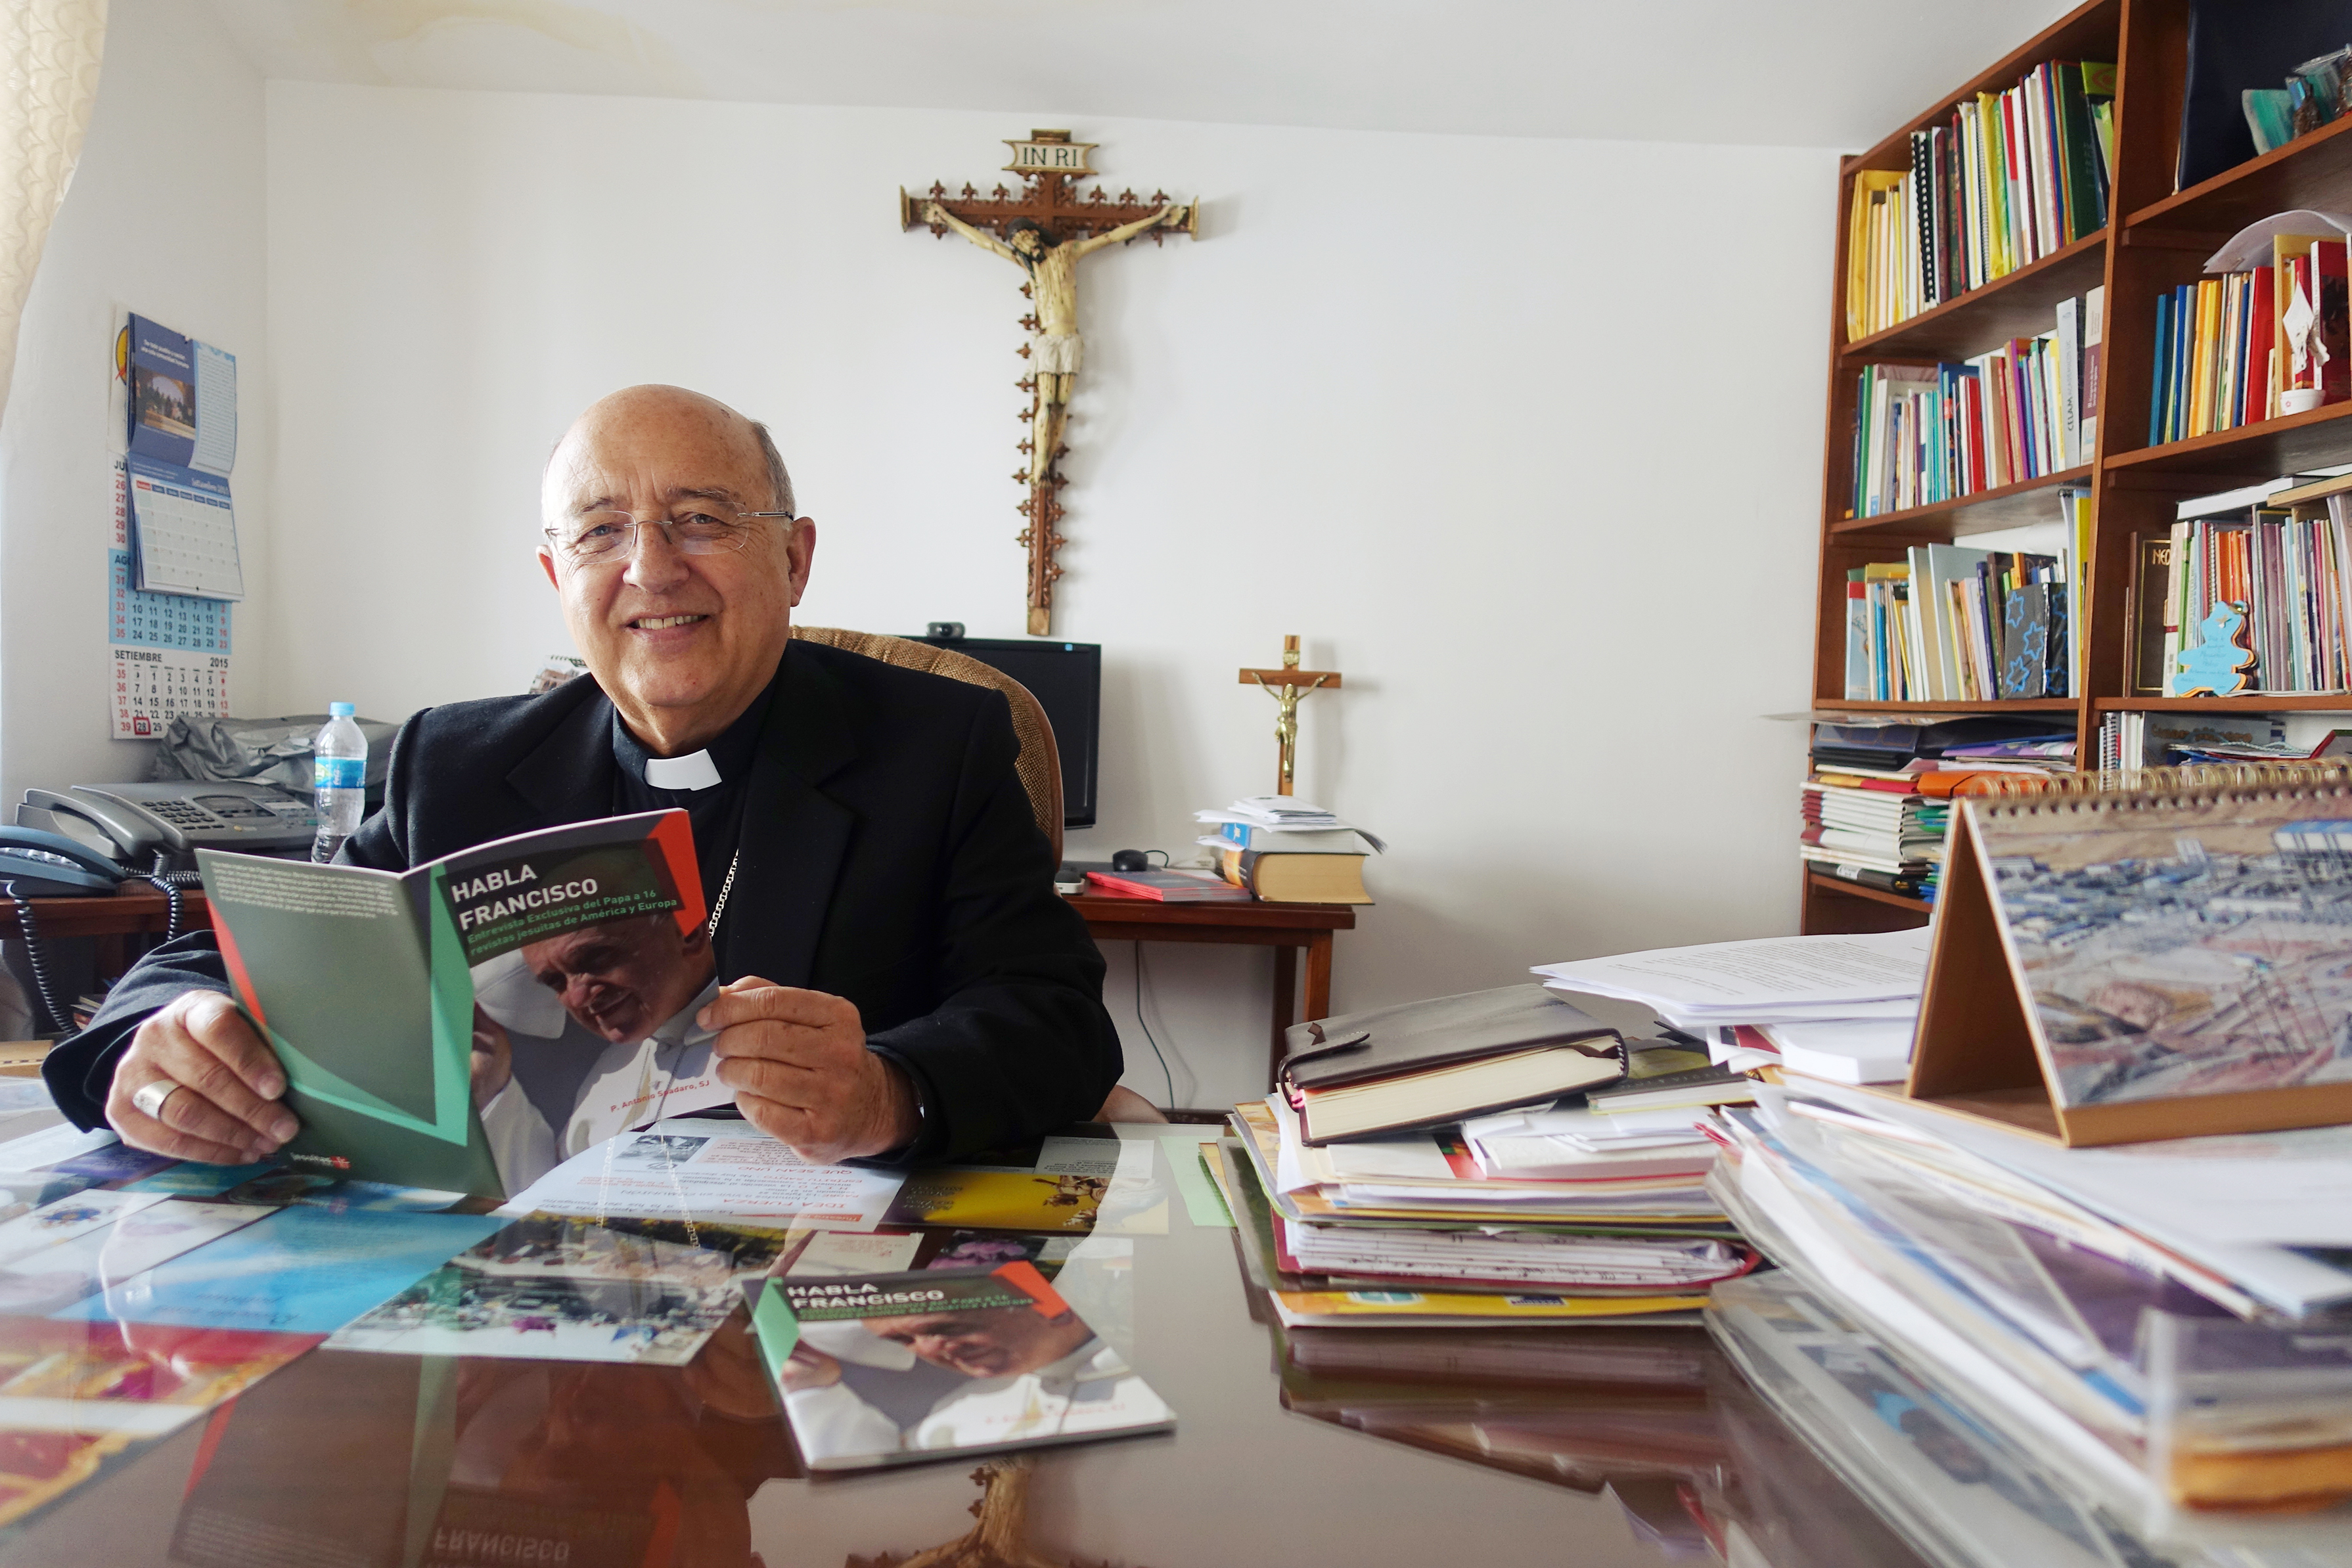 Mgr Barreto, fondateur du Réseau ecclésial pan-amazonien (Repam) © Jean-Claude Gerez